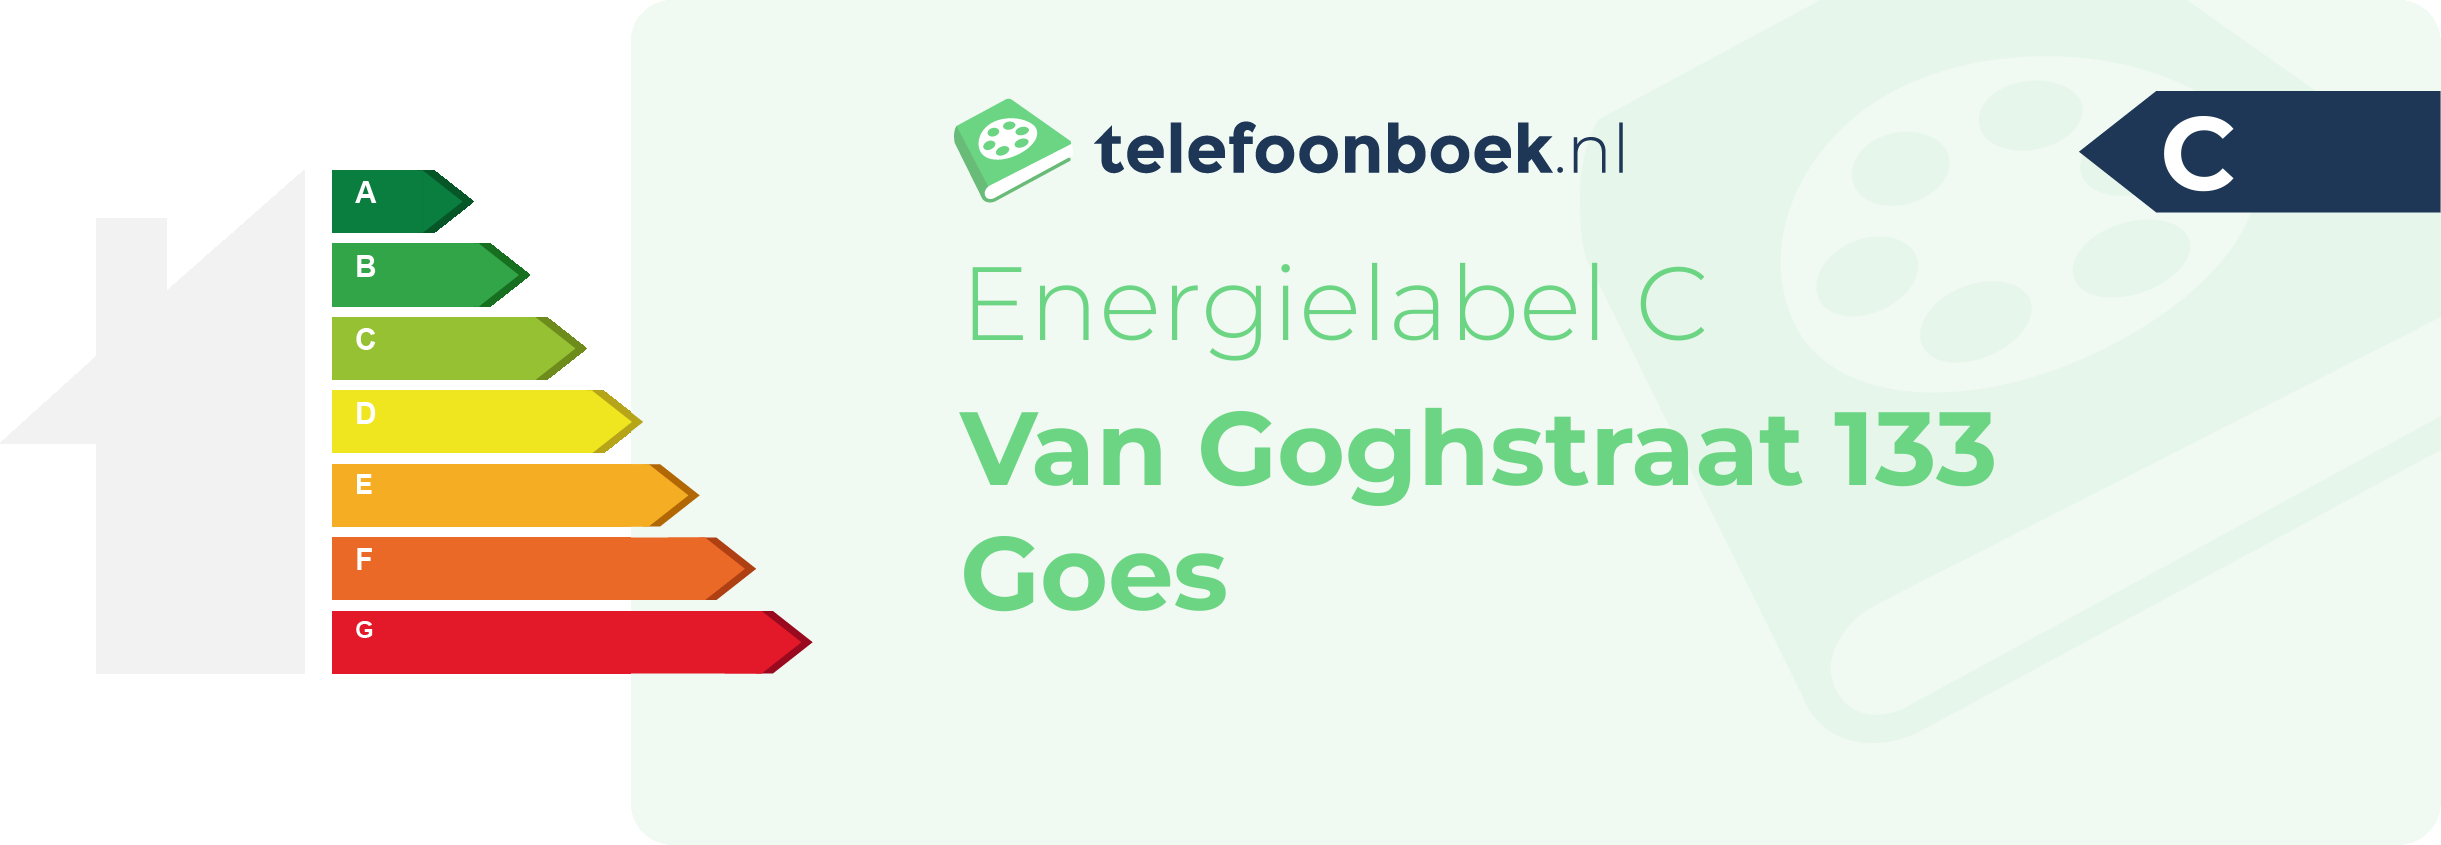 Energielabel Van Goghstraat 133 Goes